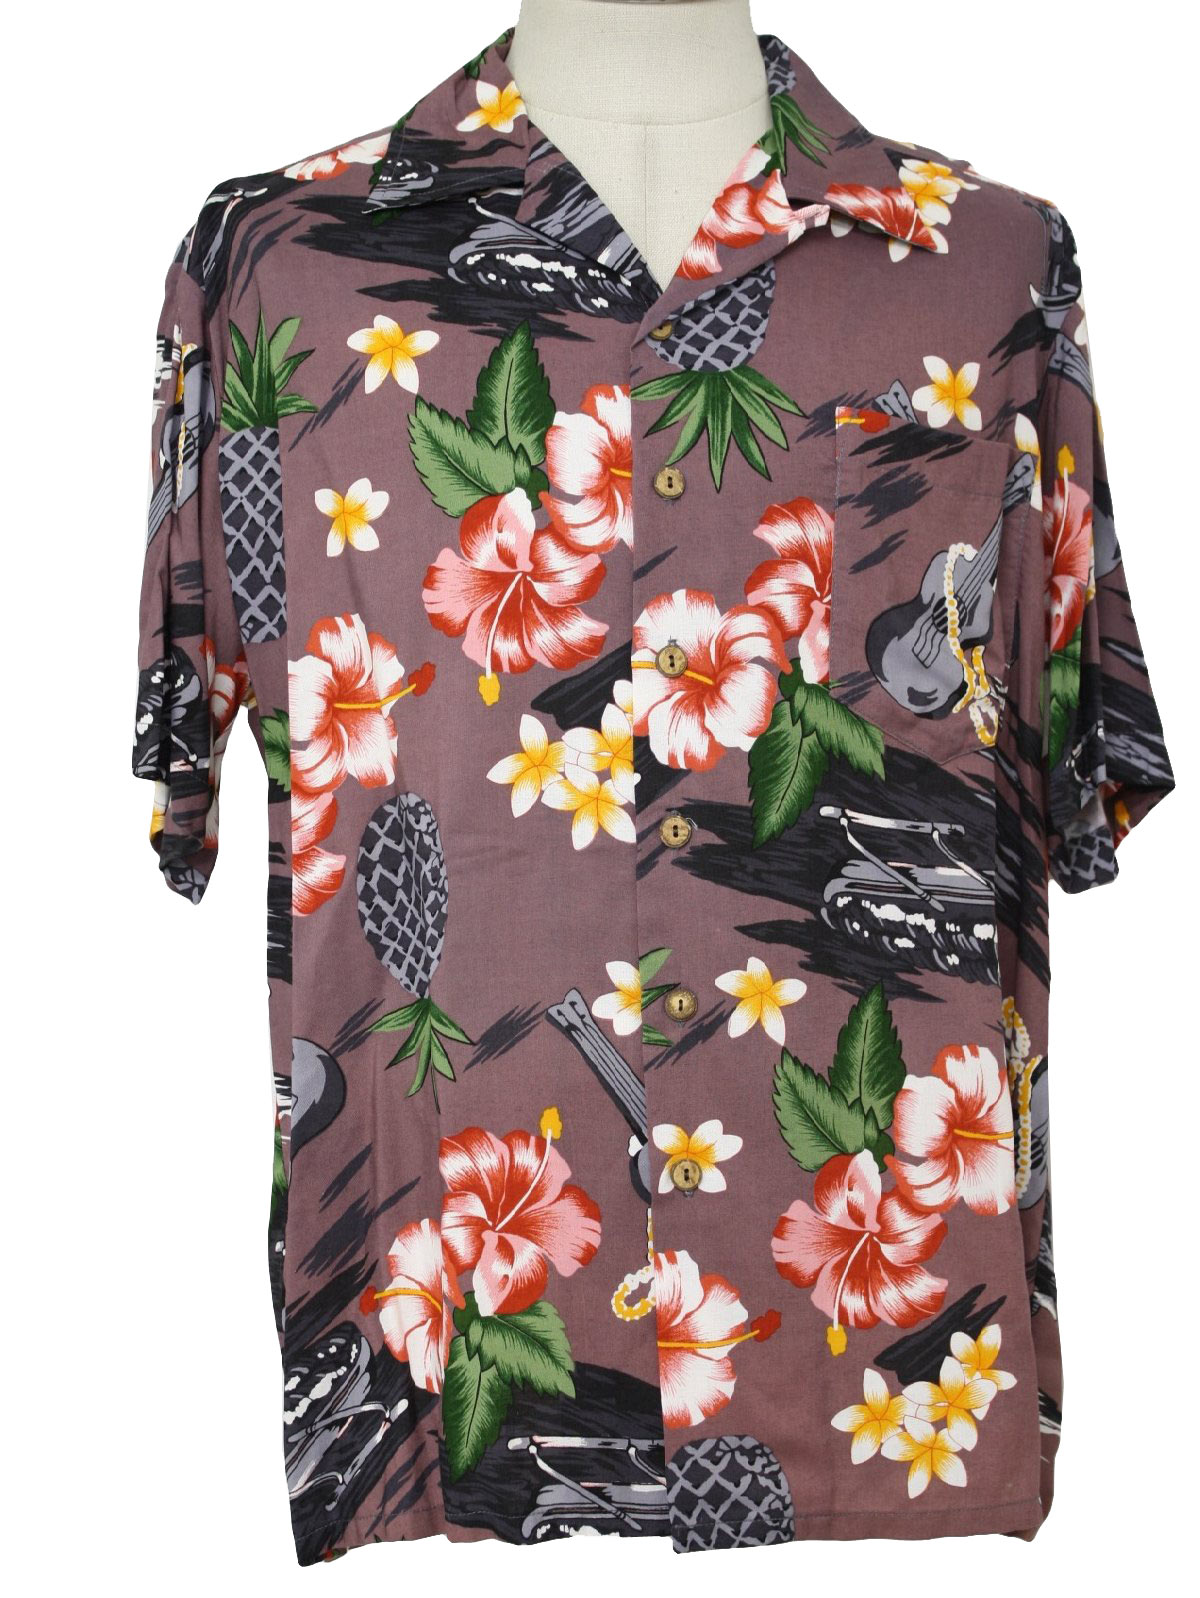 Kennington Fifties Vintage Hawaiian Shirt: 50s Inspired Print (made in ...